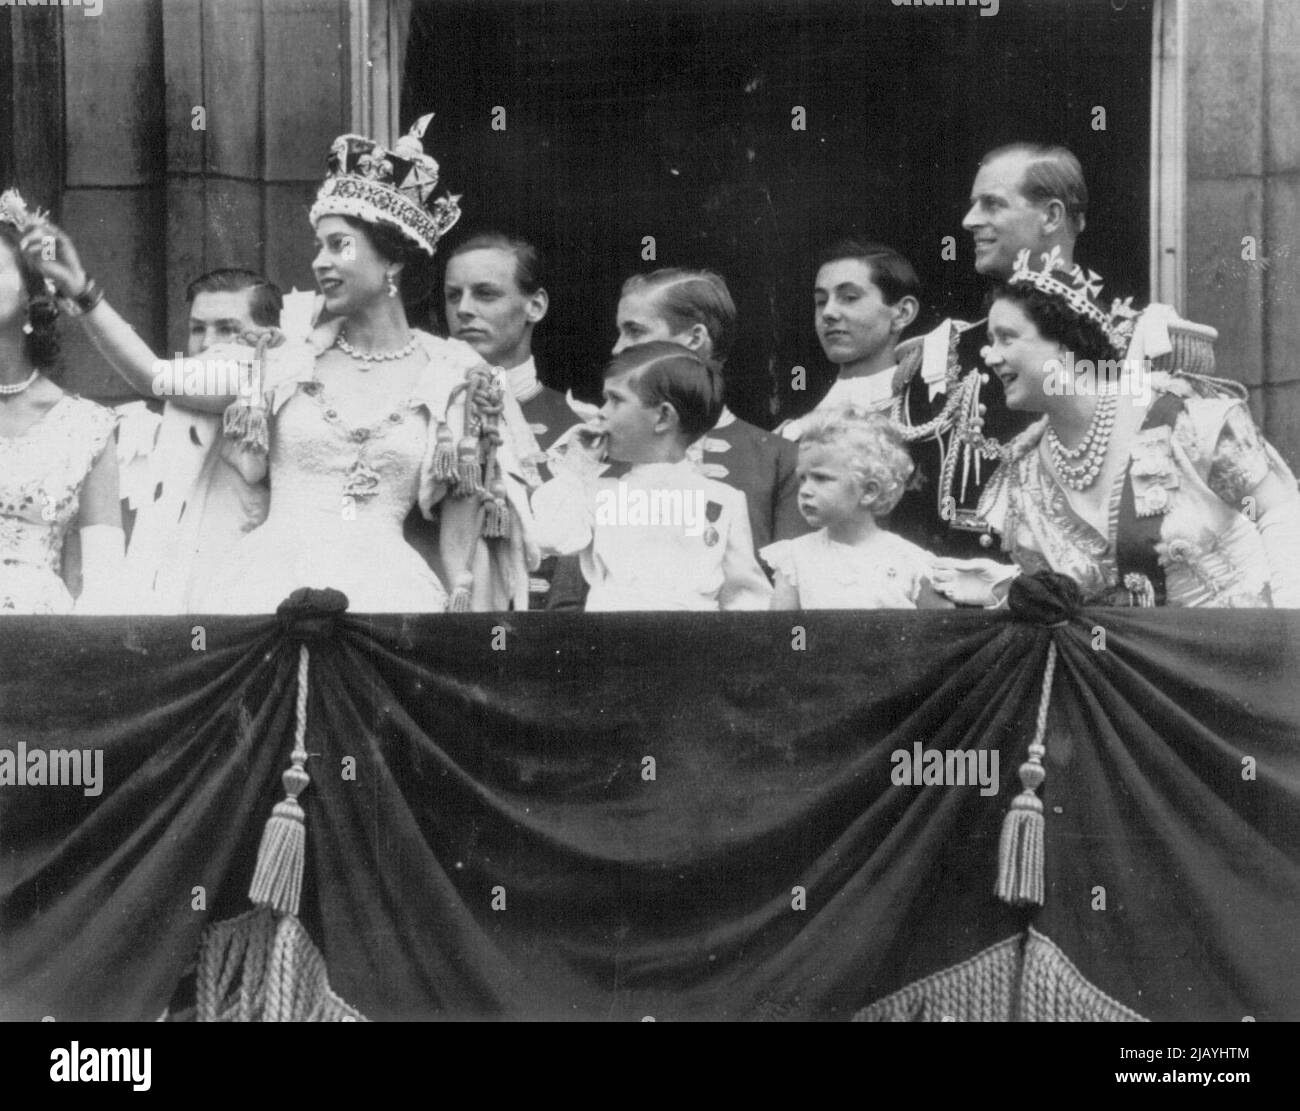 Royal Family Watches R.A.F. Couronnement Salute -- la reine Elizabeth II et certains membres de la famille royale se tiennent hier sur le balcon du Palais de Buckingham pour observer les avions de la Royal Air Force voler en hommage au couronnement. Avec la Reine se trouvent son fils, le prince Charles, sa fille, la princesse Anne, la reine mère Elizabeth et le duc d'Édimbourg. À l'extrême gauche se trouve l'une des servantes d'honneur de la Reine. À l'arrière se trouvent les quatre pages de la reine mère Elizabeth. 2 juin 1953. (Photo par AP Wirephoto). Banque D'Images